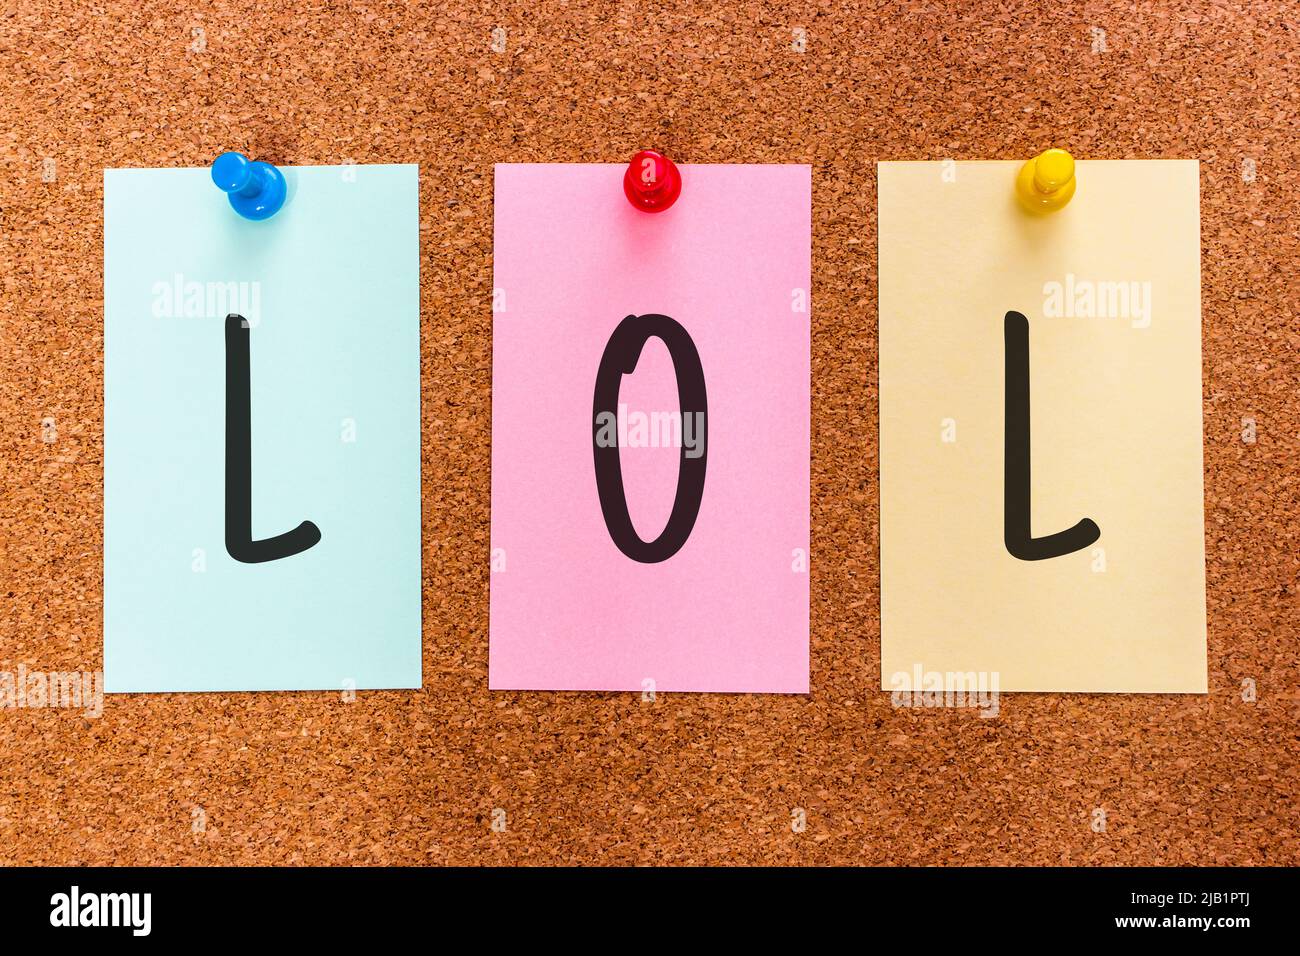 3 lettres mot-clé LOL (riant à haute voix), un élément populaire de l'argot d'Internet, sur des autocollants multicolores attachés à un tableau de liège. Banque D'Images